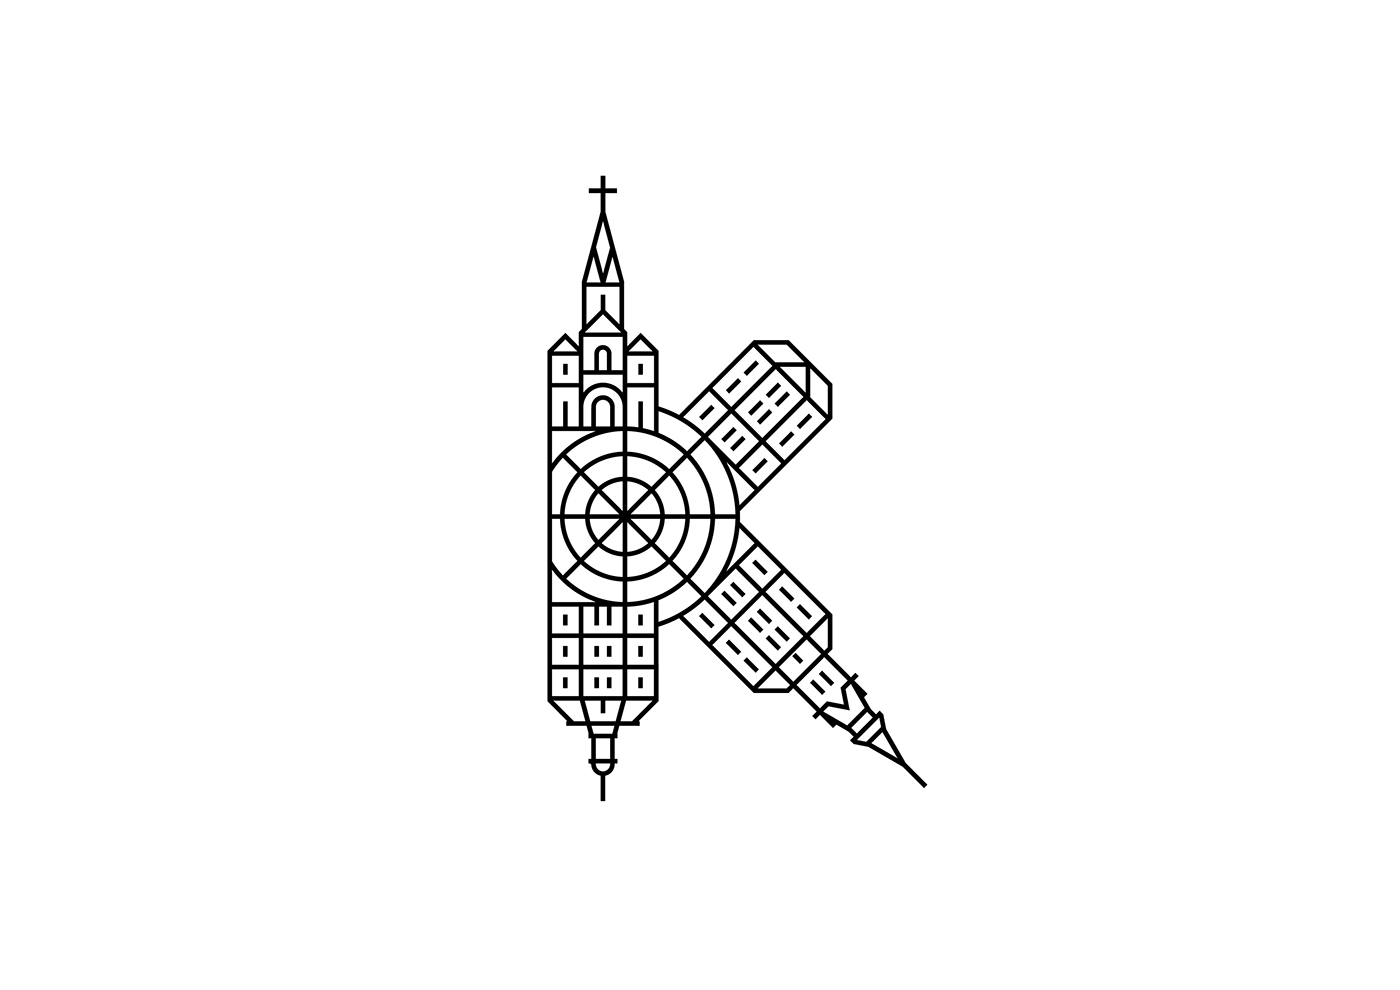 kissmiklos logo logotypes Logotype iconic logo minimal logo design minimal logo Typographical Logo engraving logo drawing logo